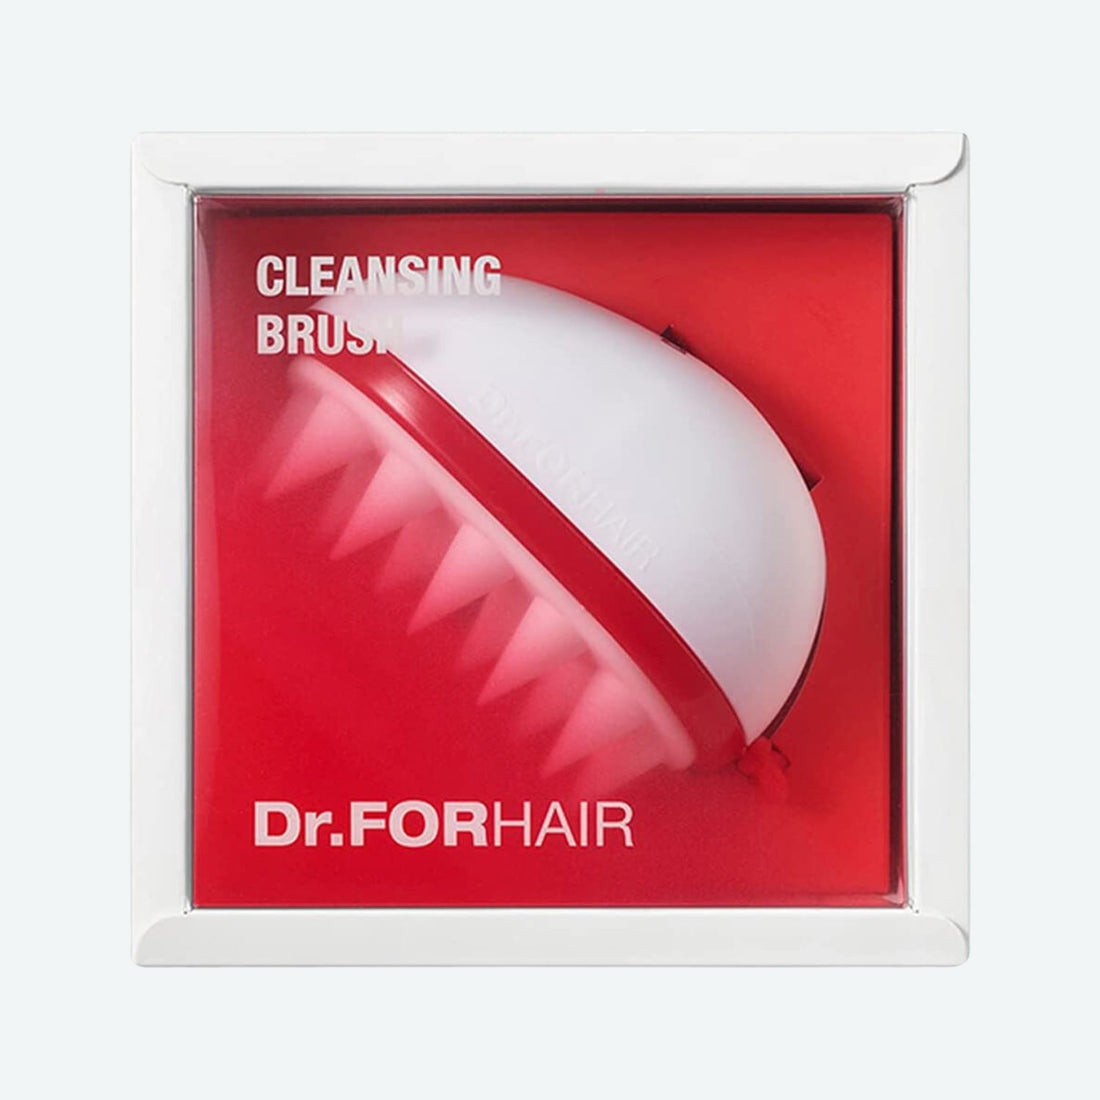 Dr.FORHAIR Scalp Cleansing Brush Hair Care Dr.FORHAIR ORION XO Sri Lanka